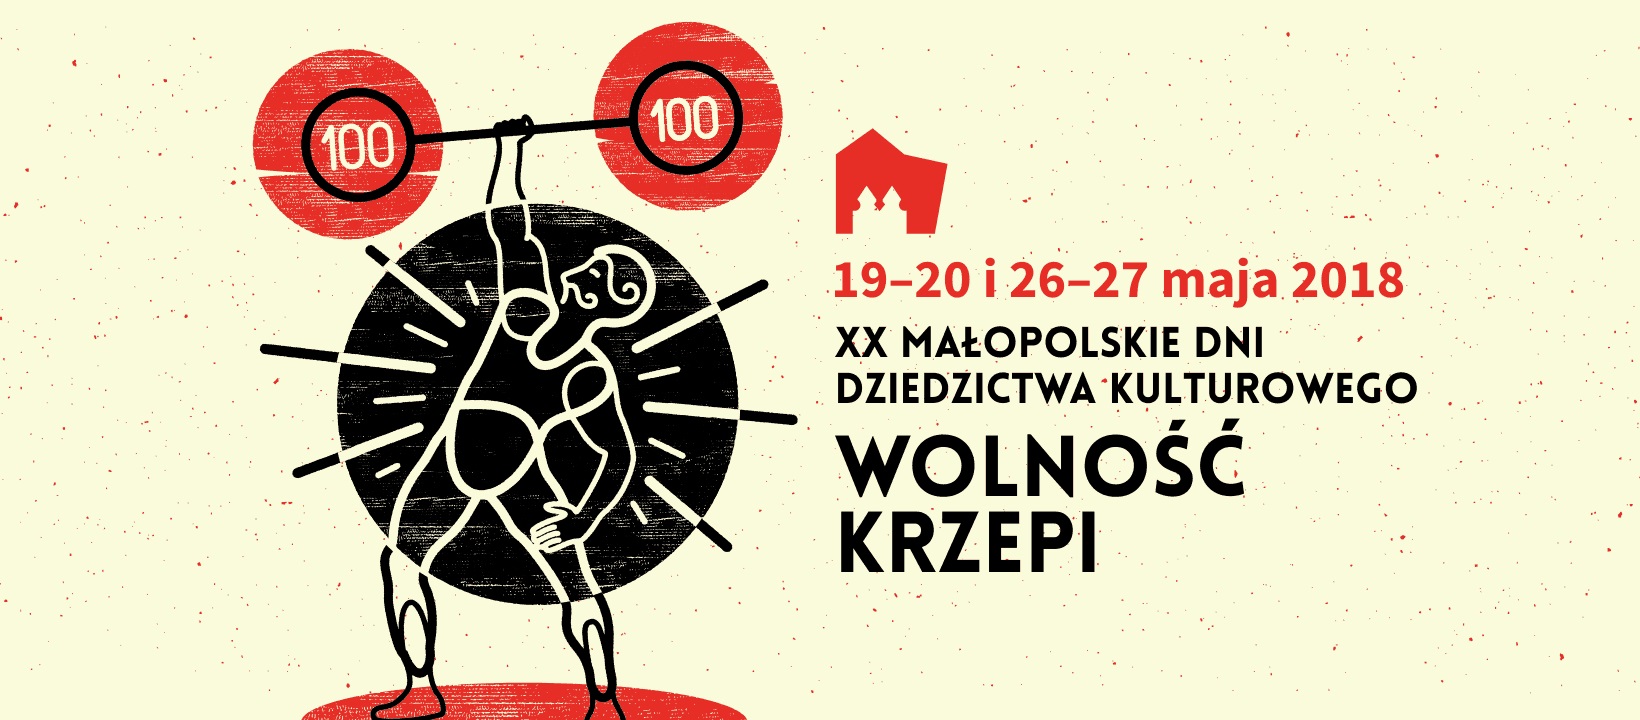 Małopolskie Dni Dziedzictwa Kulturowego (źródło: materiały prasowe organizatora)